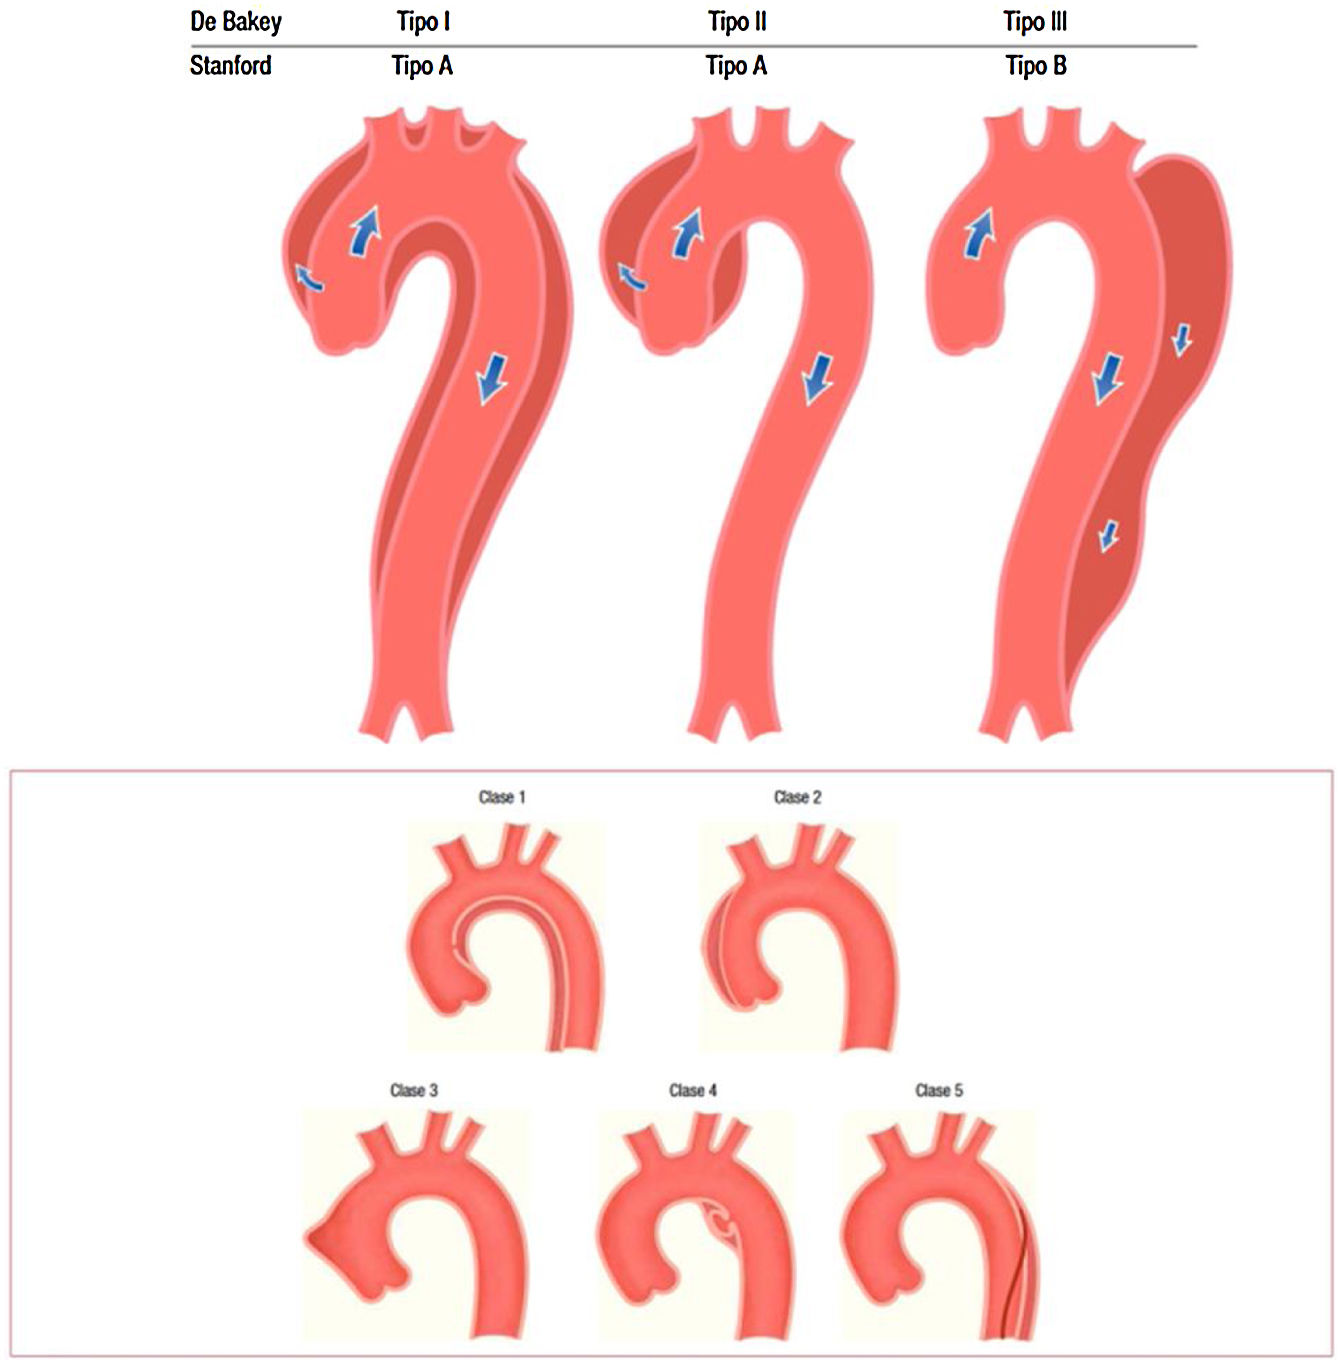 Síndrome de la arteria mesentérica superior: consideraciones diagnósticas y  terapéuticas